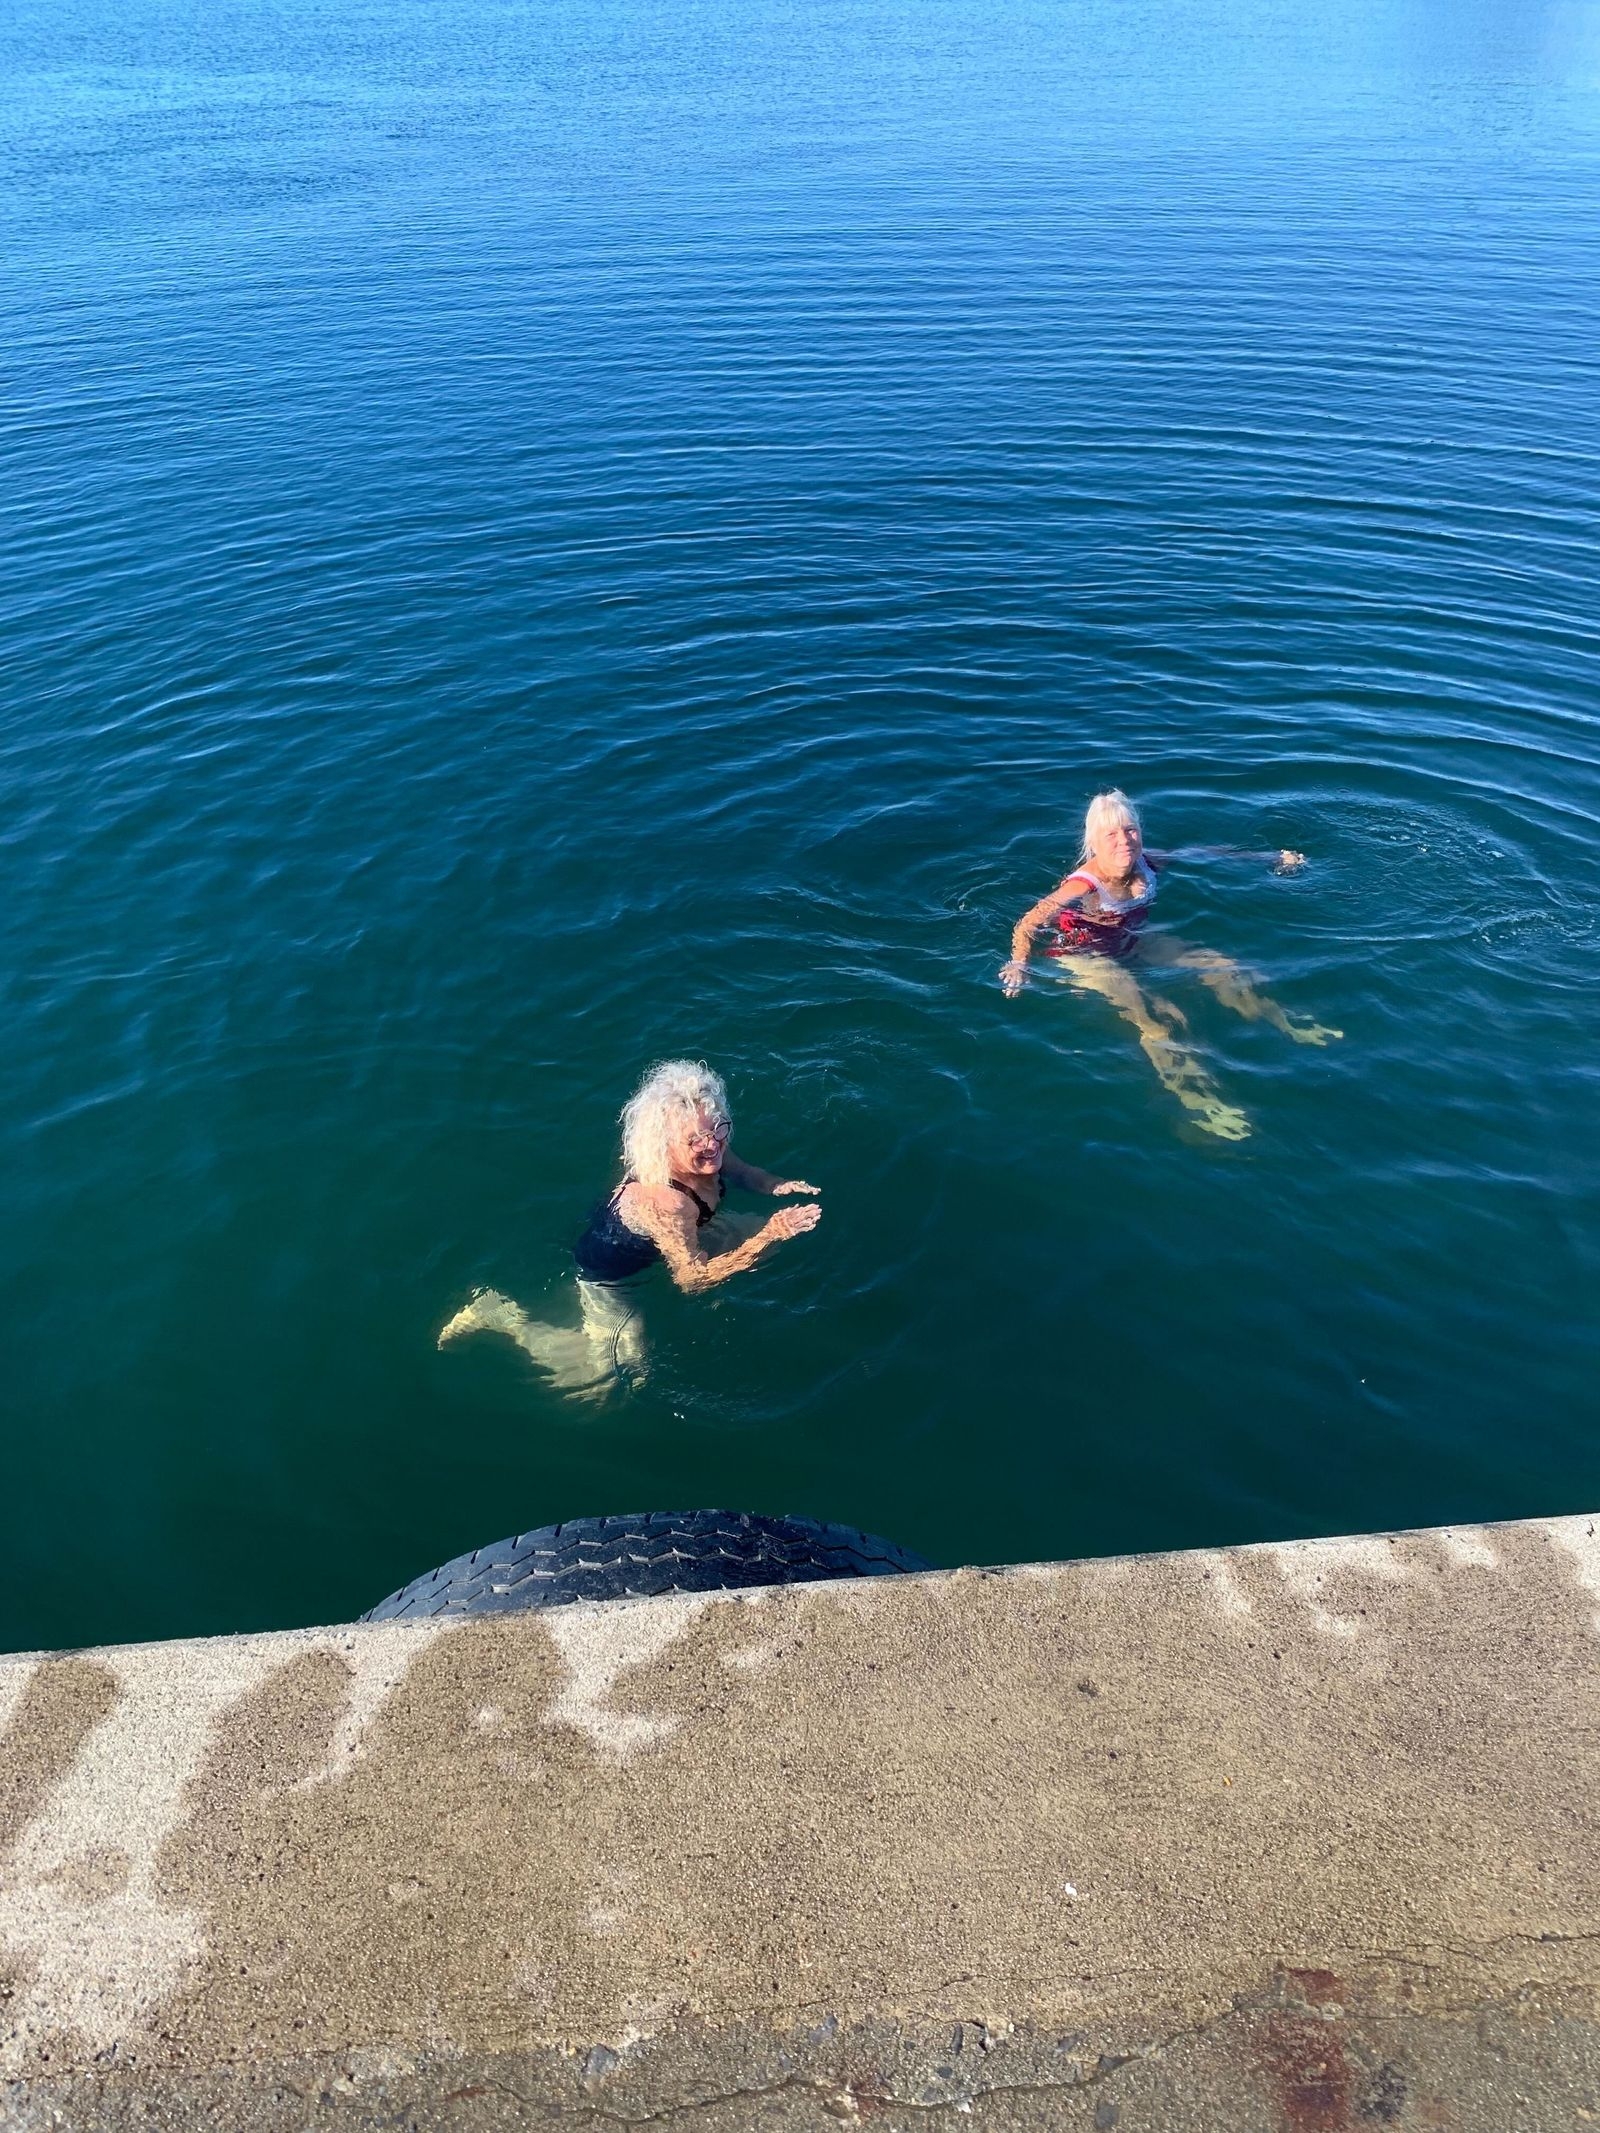 Bad i Skillinge den 12 juli – med 18 grader i vattnet. Foto Eva Törnvall